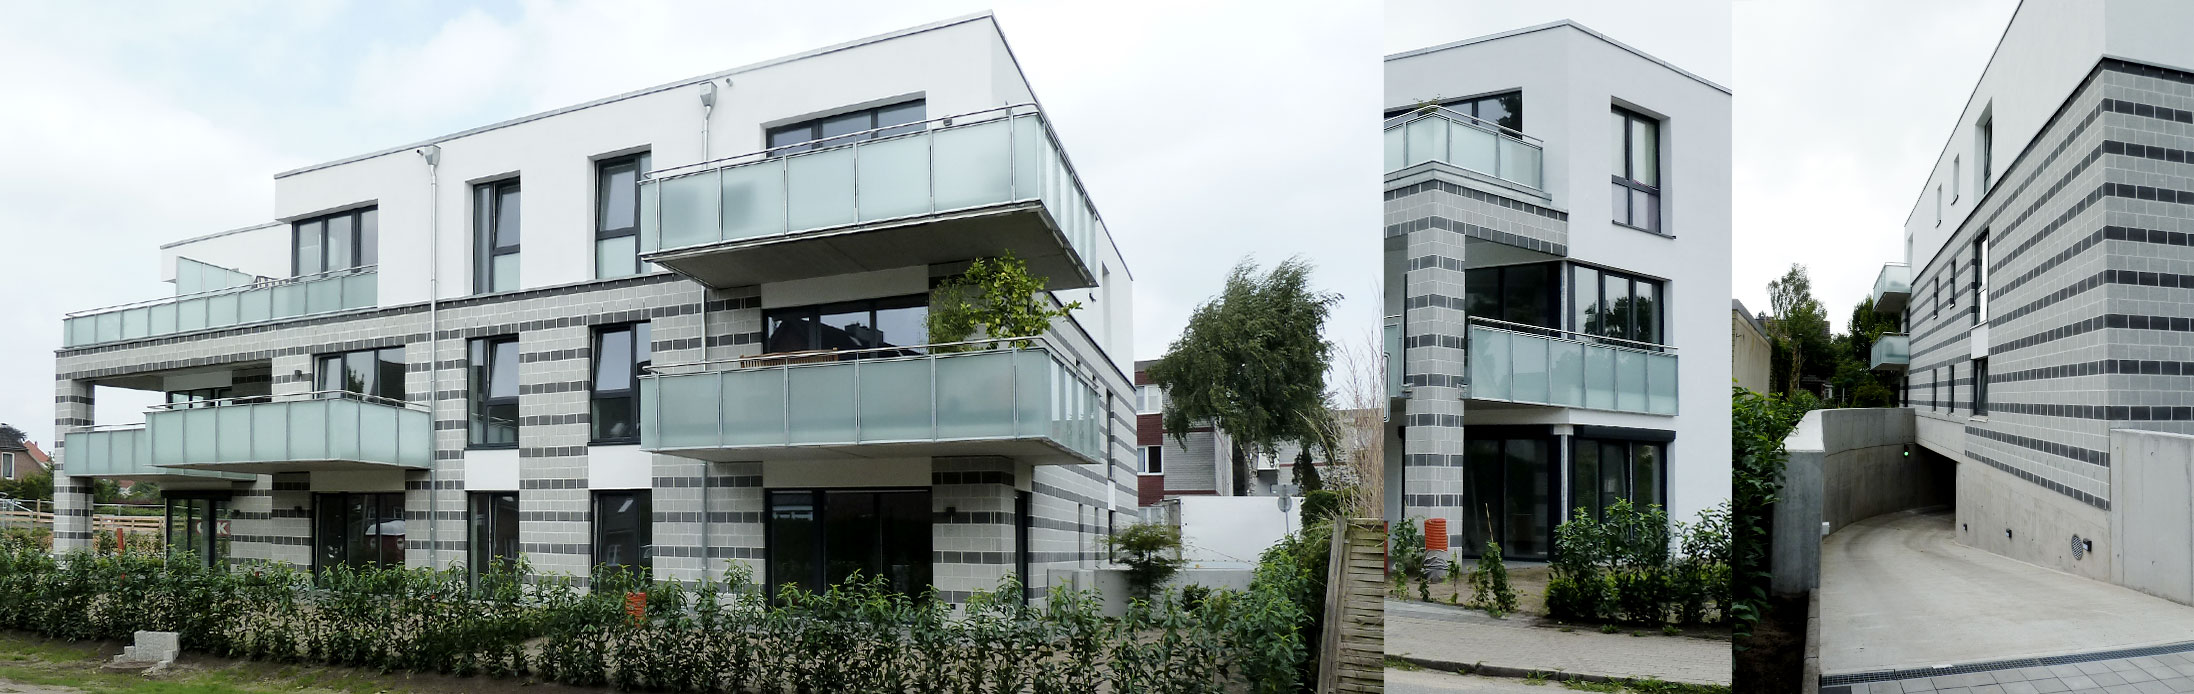 Rellingen – Jacob-Ahrens-Straße | Mehrfamilienhaus | 12 Wohneinheiten | Tiefgarage | Aufzug | Baujahr 2018